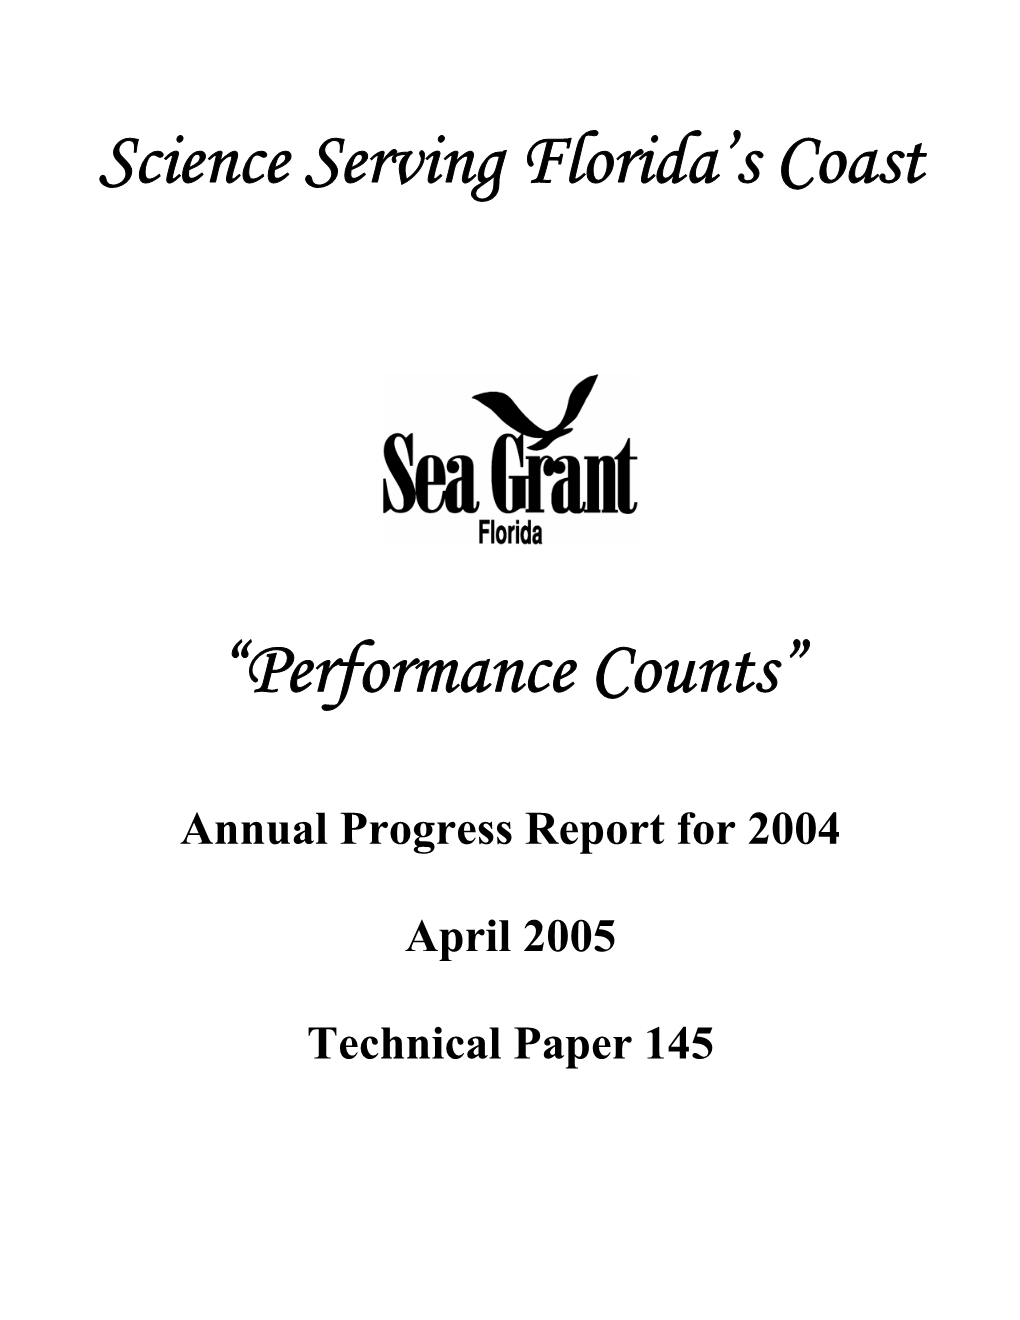 Annual Progress Report for 2004